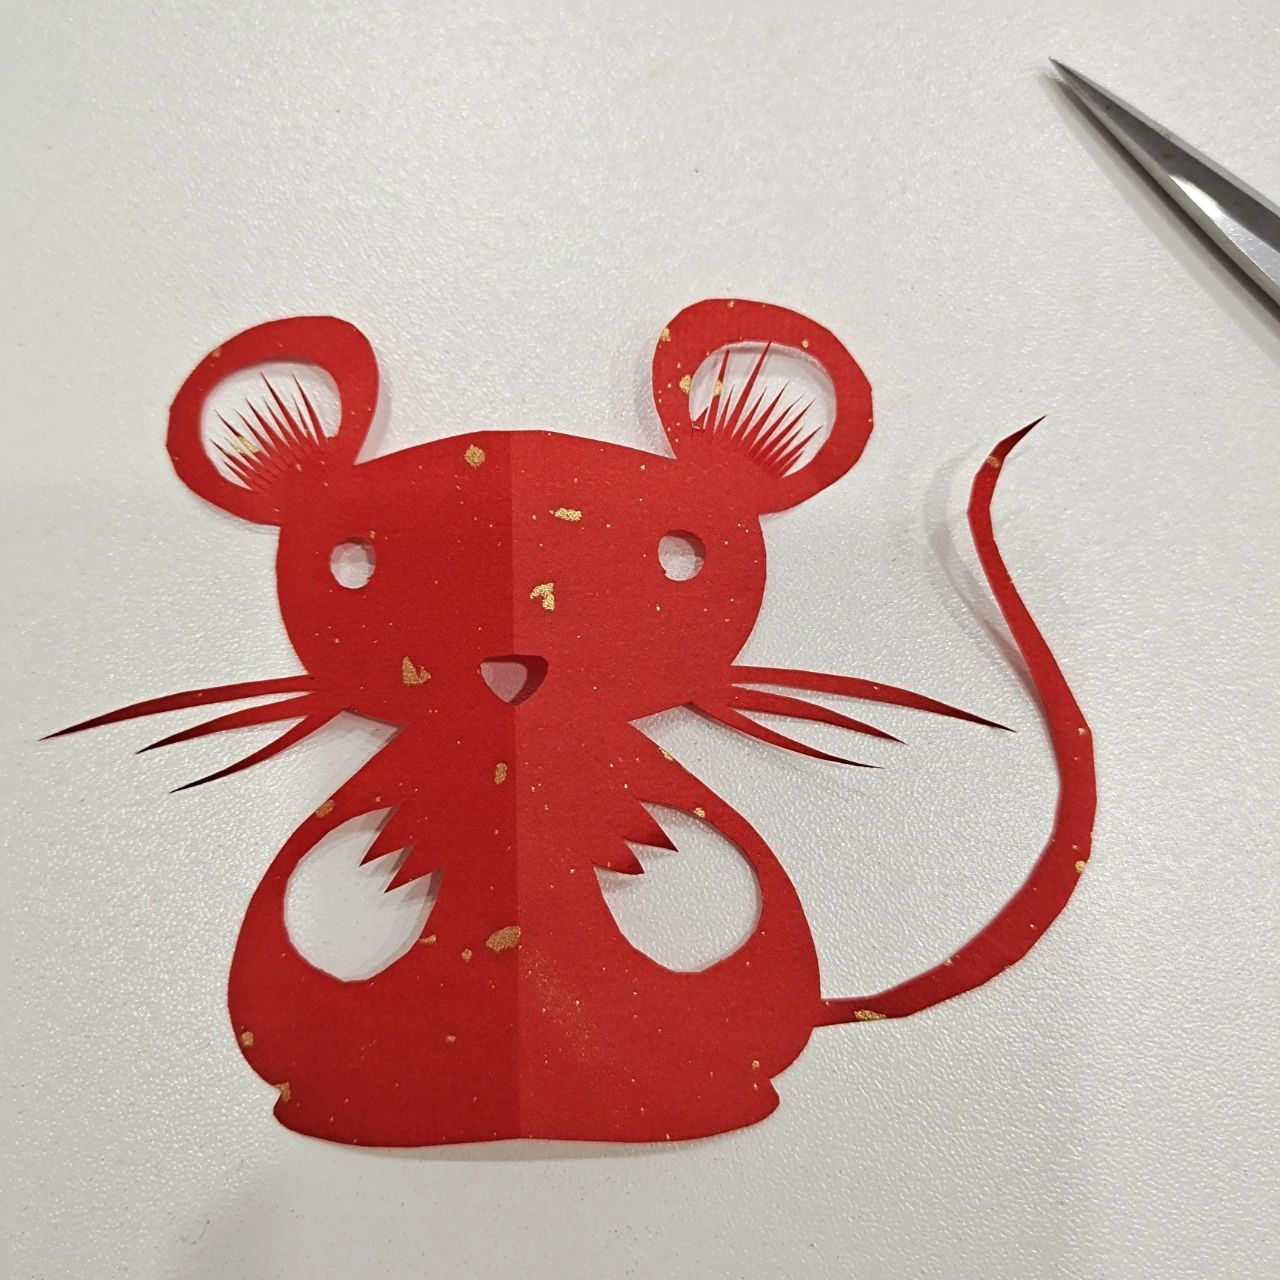 剪纸老鼠的剪法简单图片